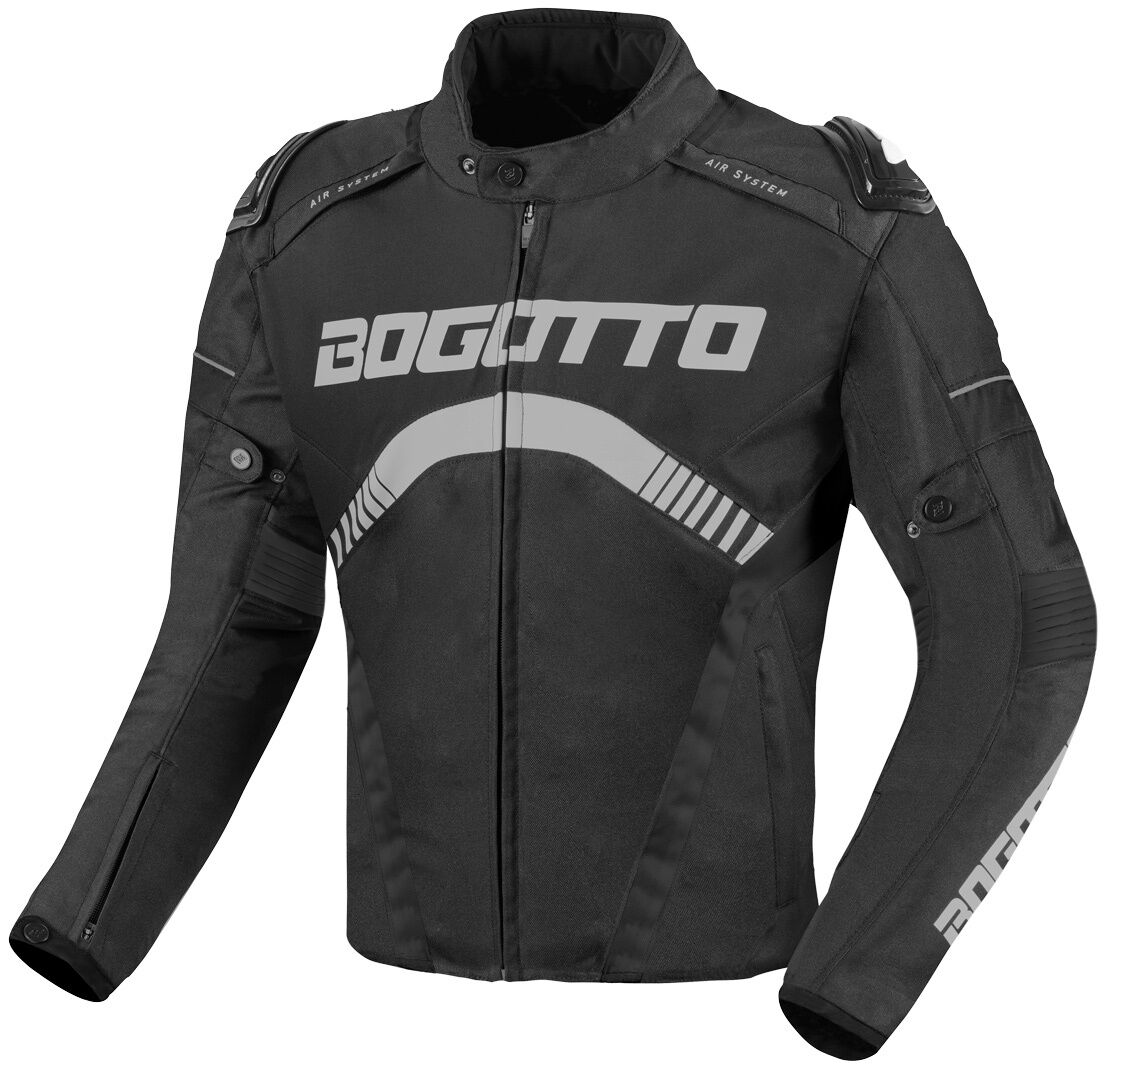 Bogotto Boomerang Chaqueta textil impermeable para motocicleta - Negro Gris (L)